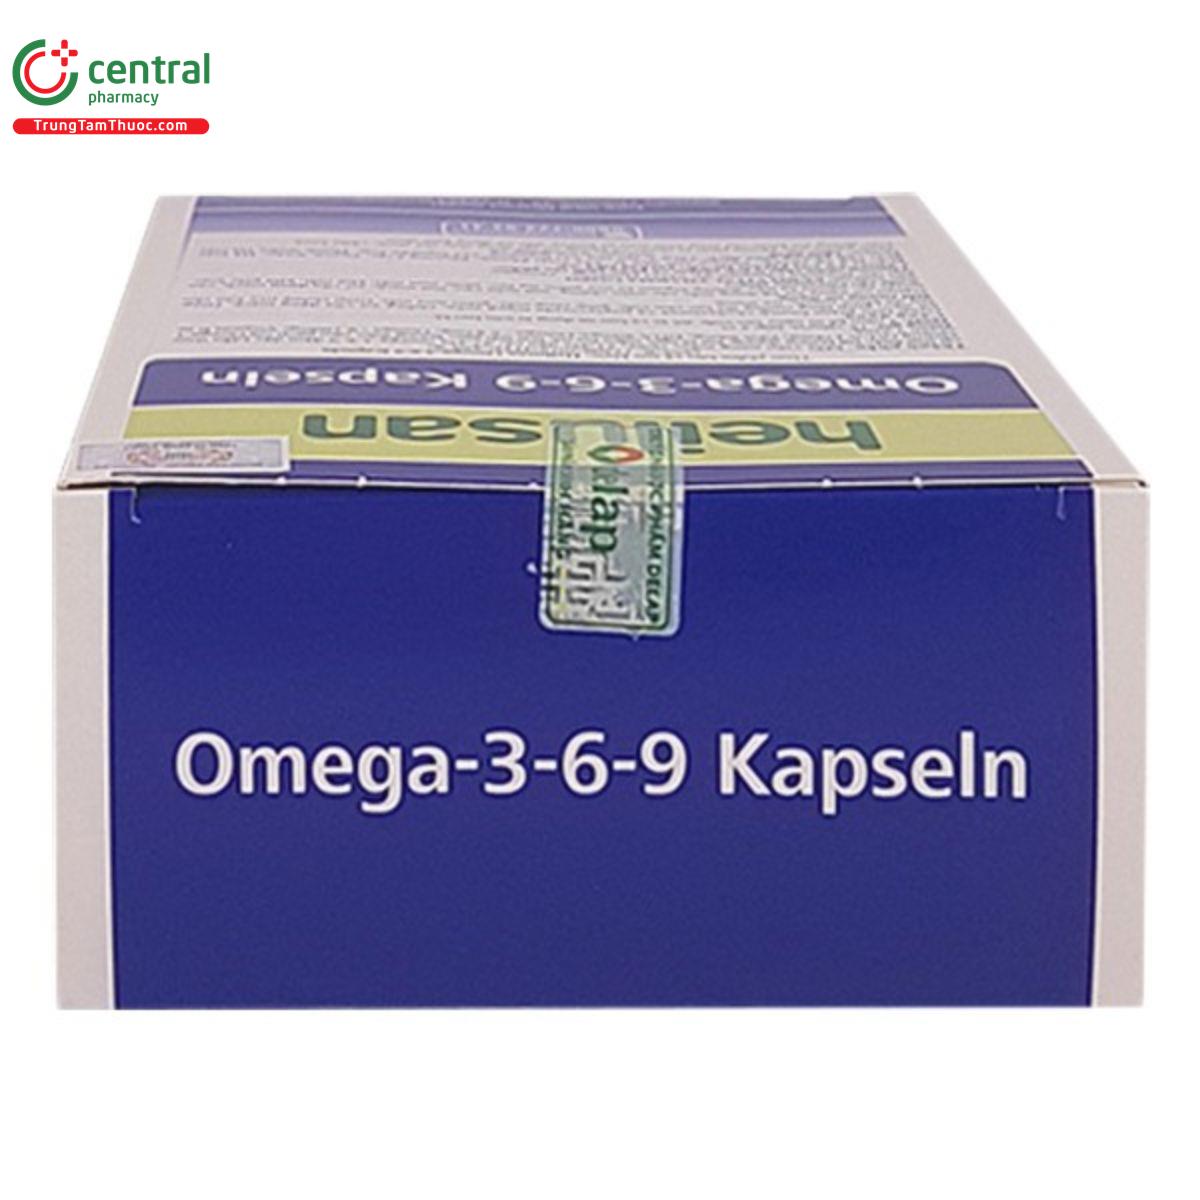 heilusan omega 3 6 9 kapseln 13 D1417